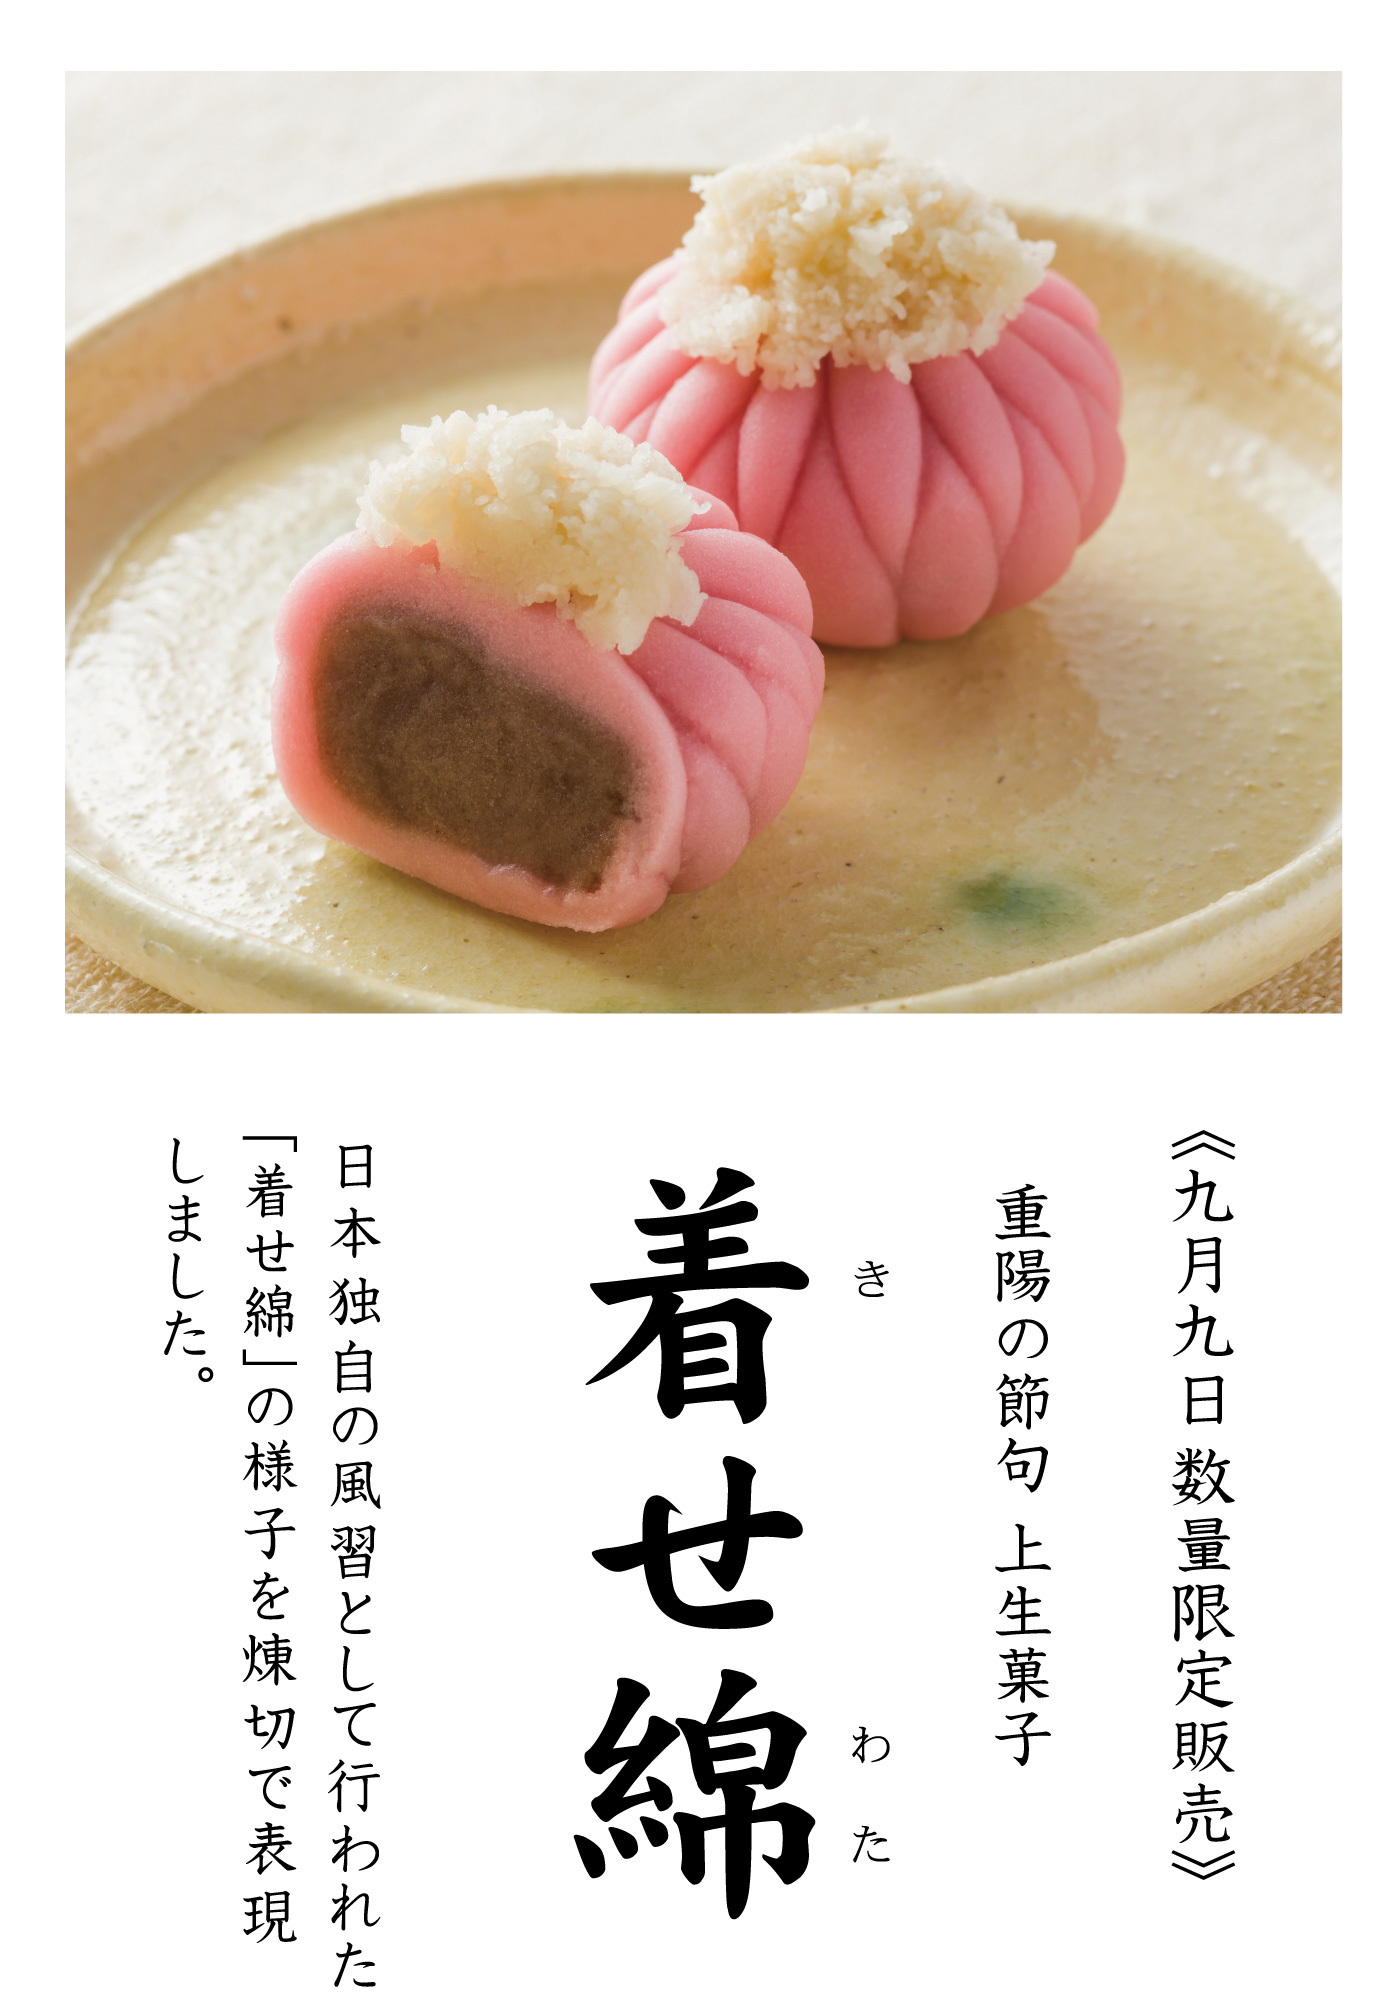 《九月九日数量限定販売》重陽の節句上生菓子着きせ綿わた日本独自の風習として行われた「着せ綿」の様子を煉切で表現しました。